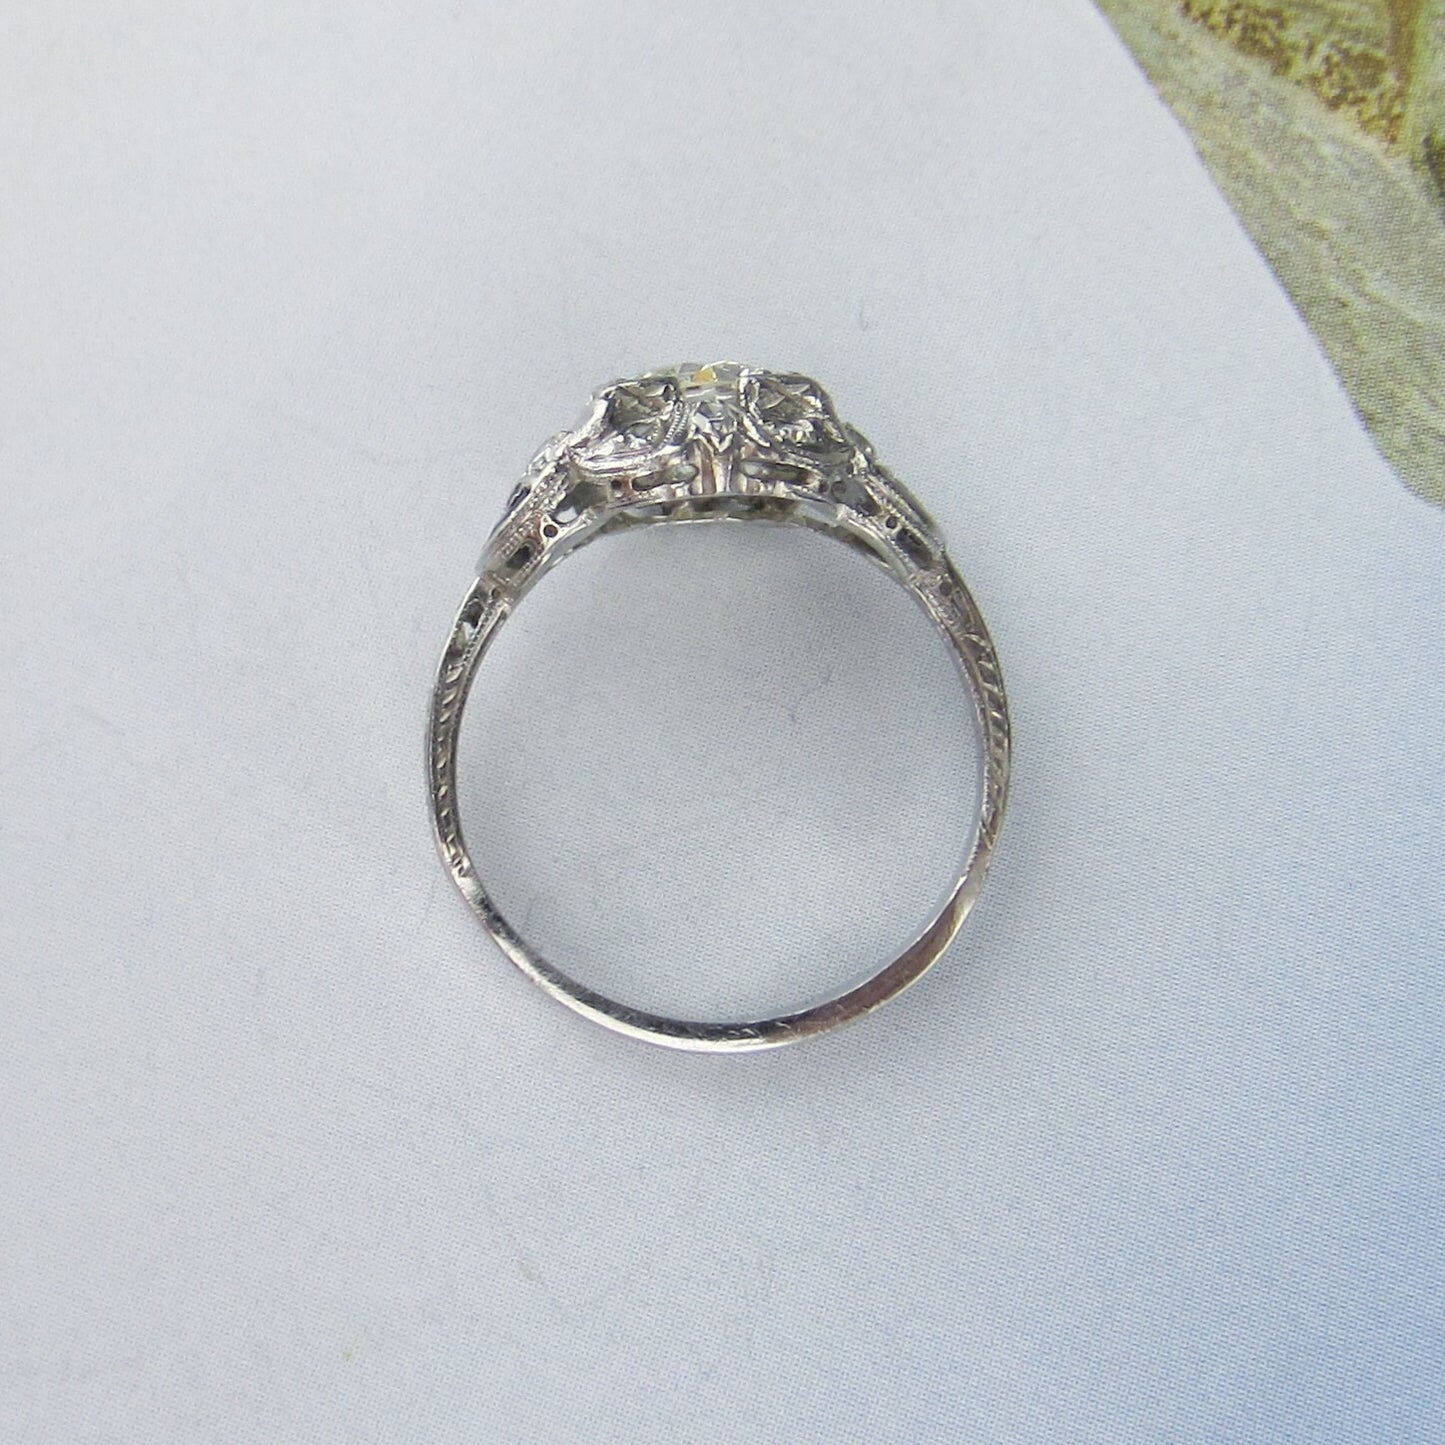 SOLD--Art Deco 1.08ct Diamond Engagement Ring Platinum c. 1930